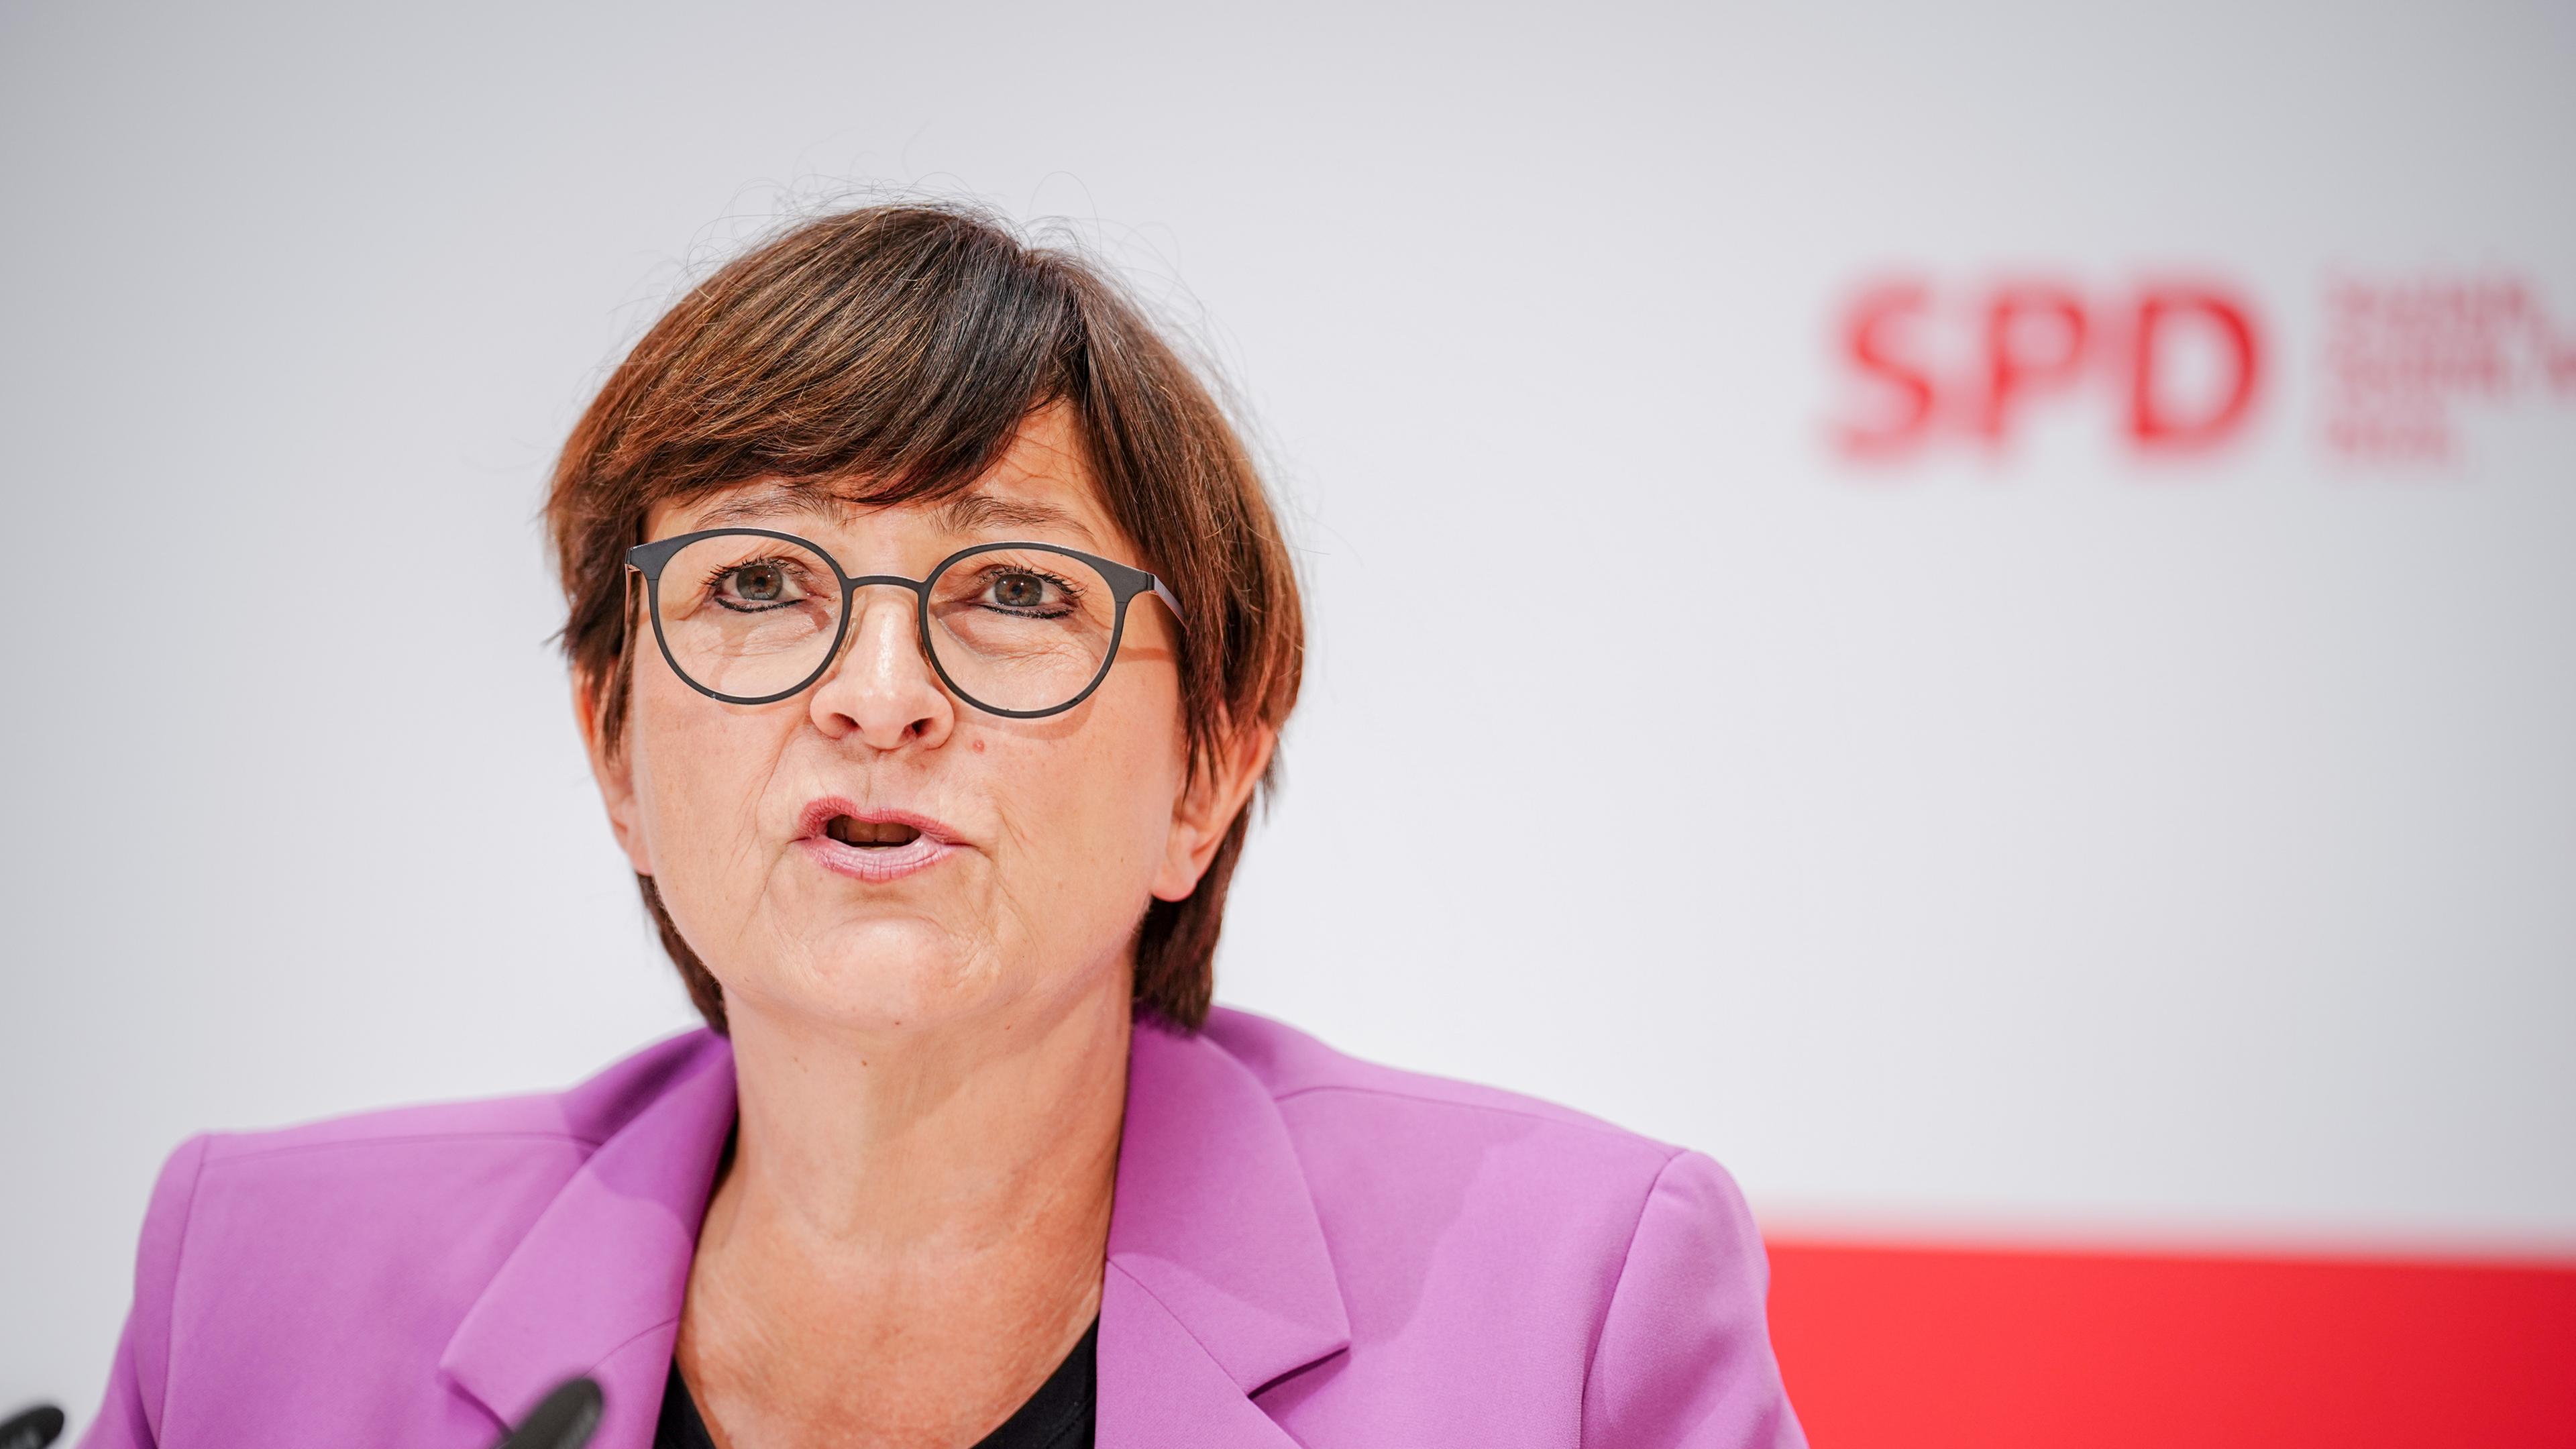 Saskia Esken, SPD-Bundesvorsitzende, gibt nach den Gremiensitzungen ihrer Partei eine Pressekonferenz.